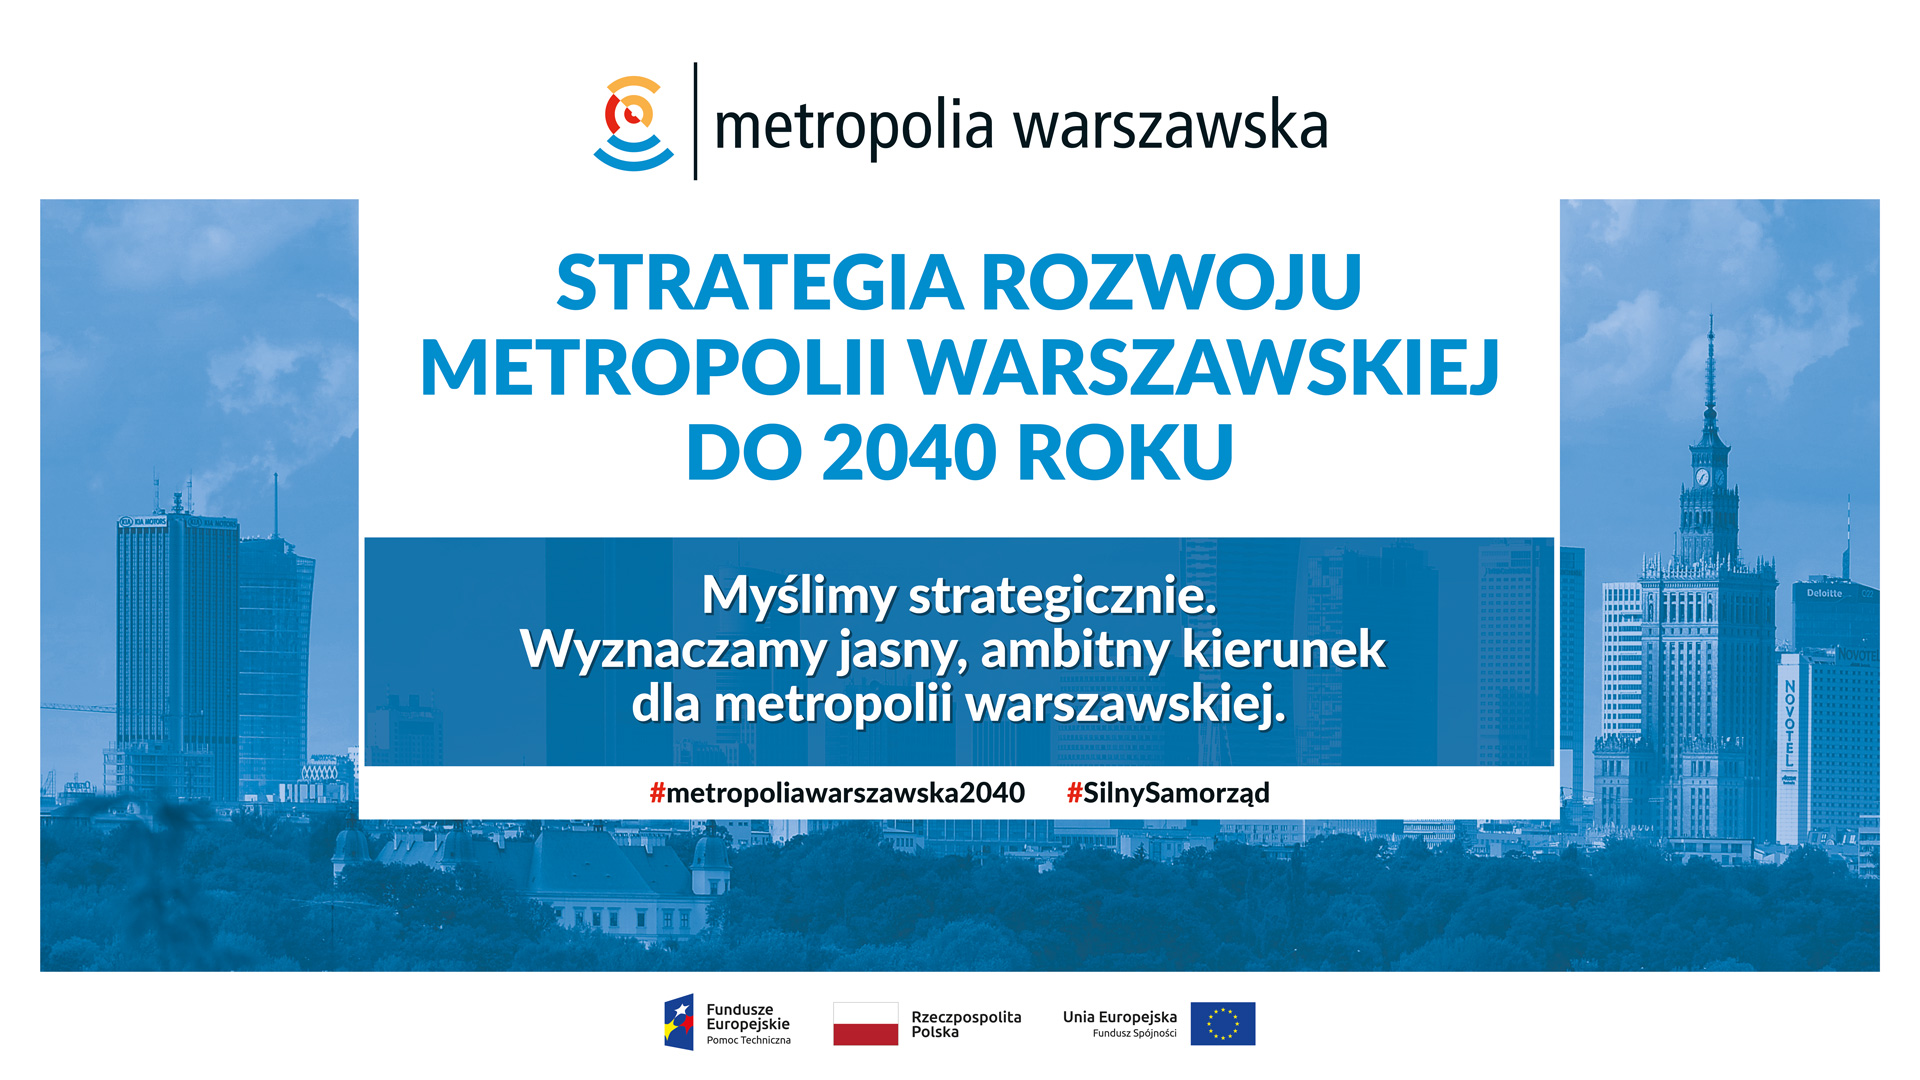 Strategia metropolii warszawskiej do 2040 roku